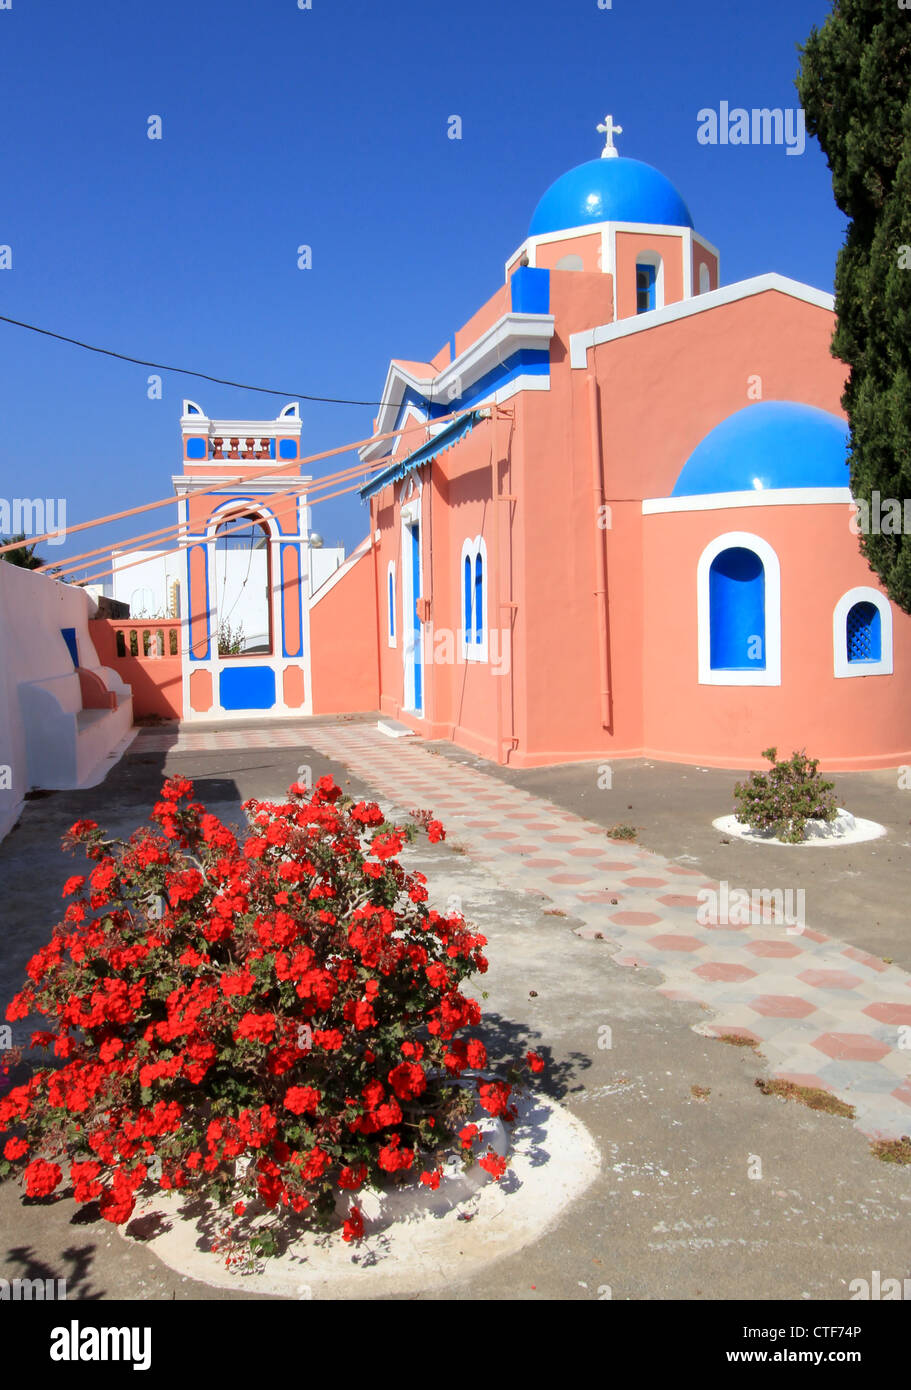 Coloratissima chiesa ortodossa con architettura tipica e cupola blu di Oia - Santorini Island, Grecia Foto Stock